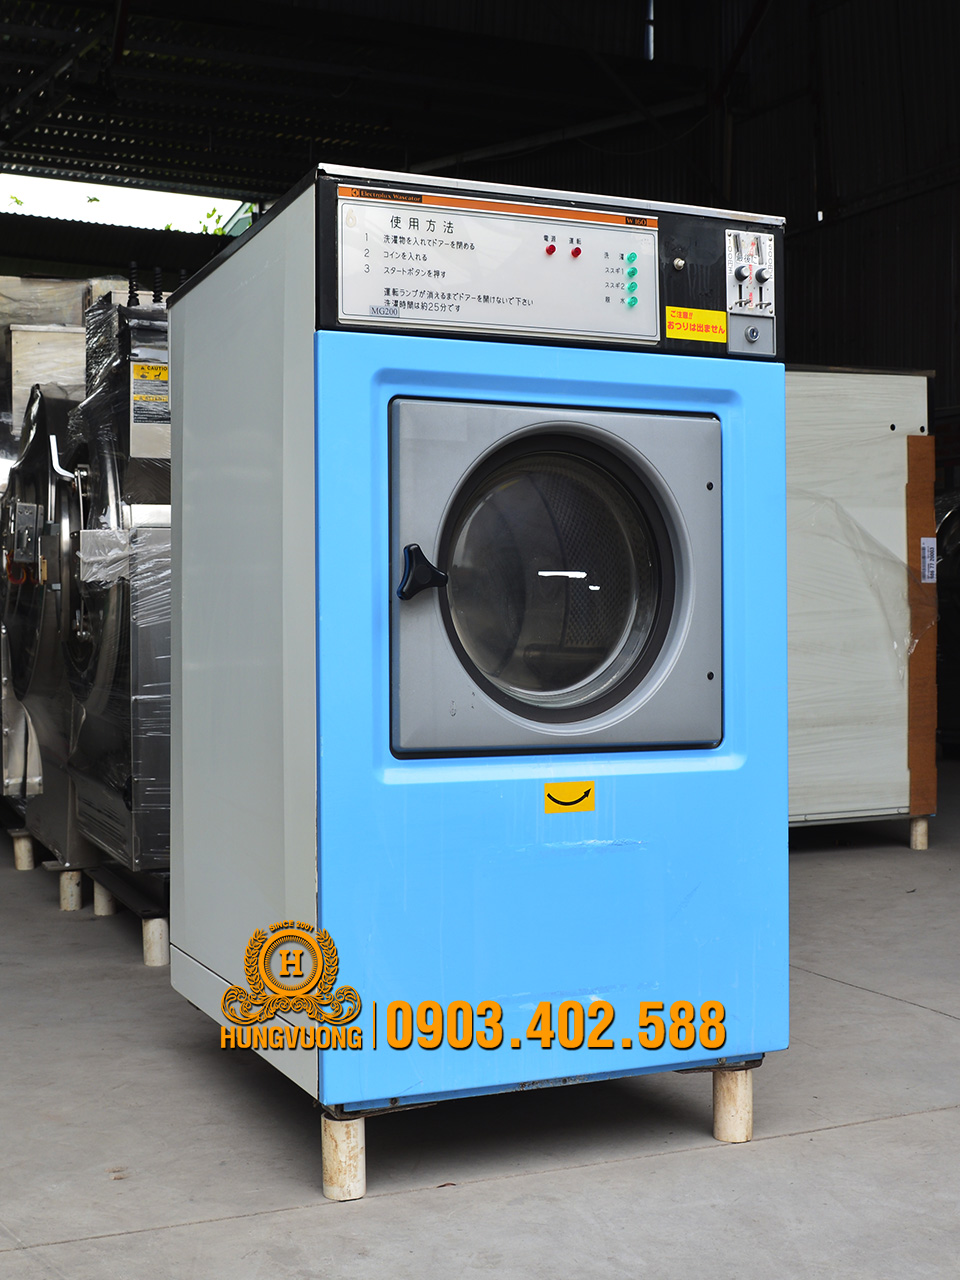 Mặt nghiêng máy giặt công nghiệp ELECTROLUX WASCATOR W160,16kg, chân cố định, Thụy Điển